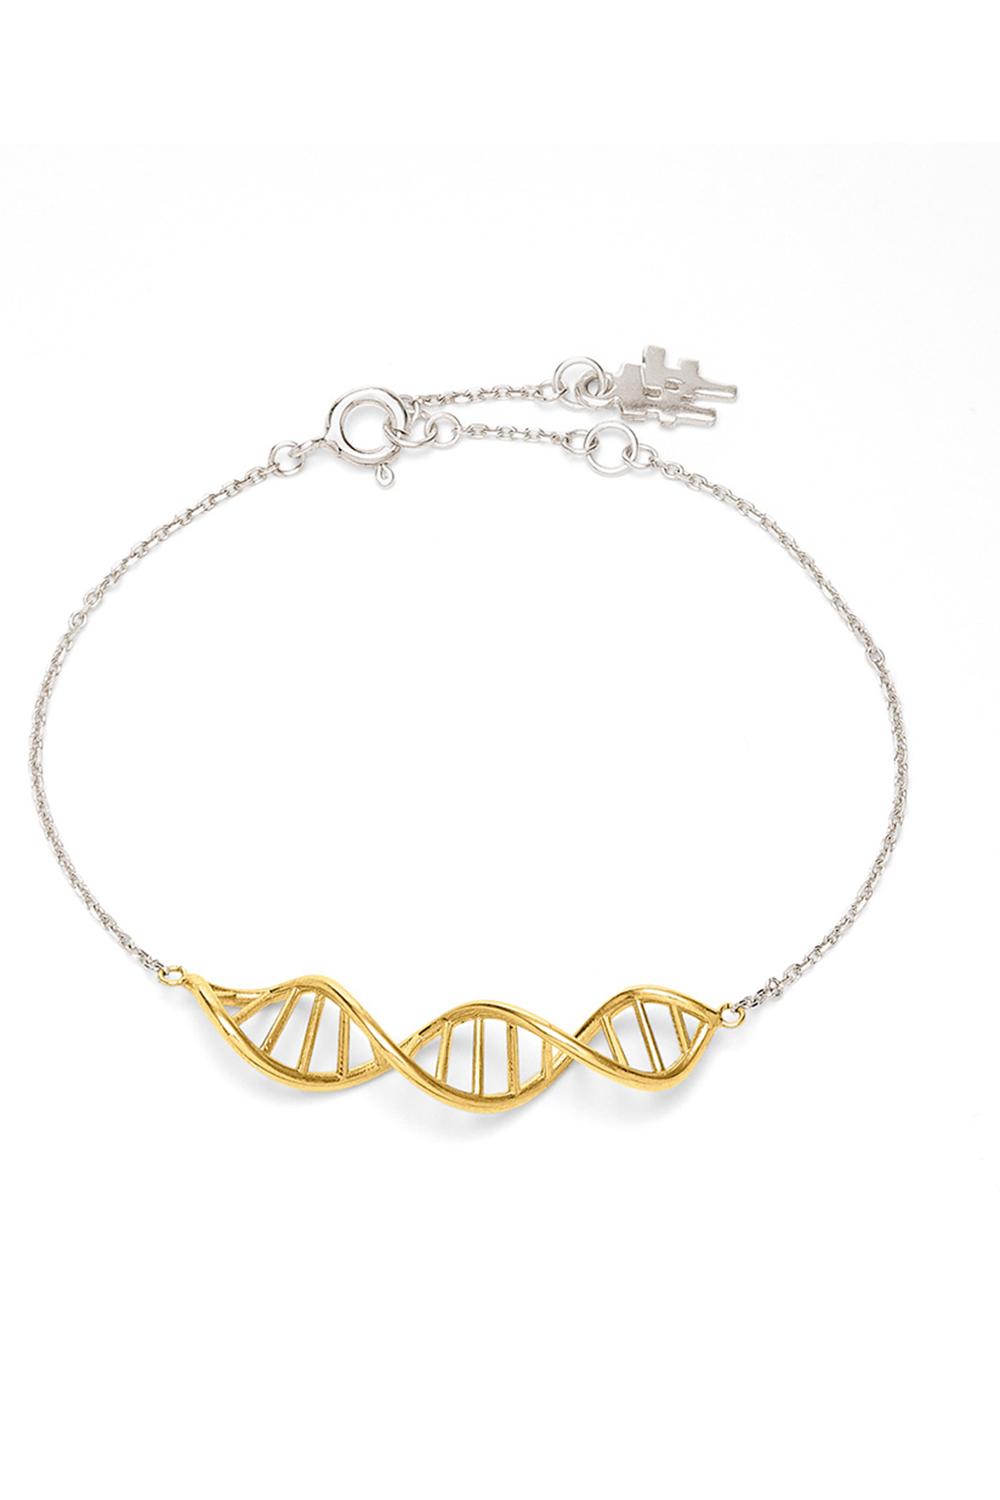 Γυναικεία/Αξεσουάρ/Κοσμήματα/Βραχιόλια FOLLI FOLLIE - Γυναικείο ασημένιο βραχιόλι FOLLI FOLLIE STYLE DNA